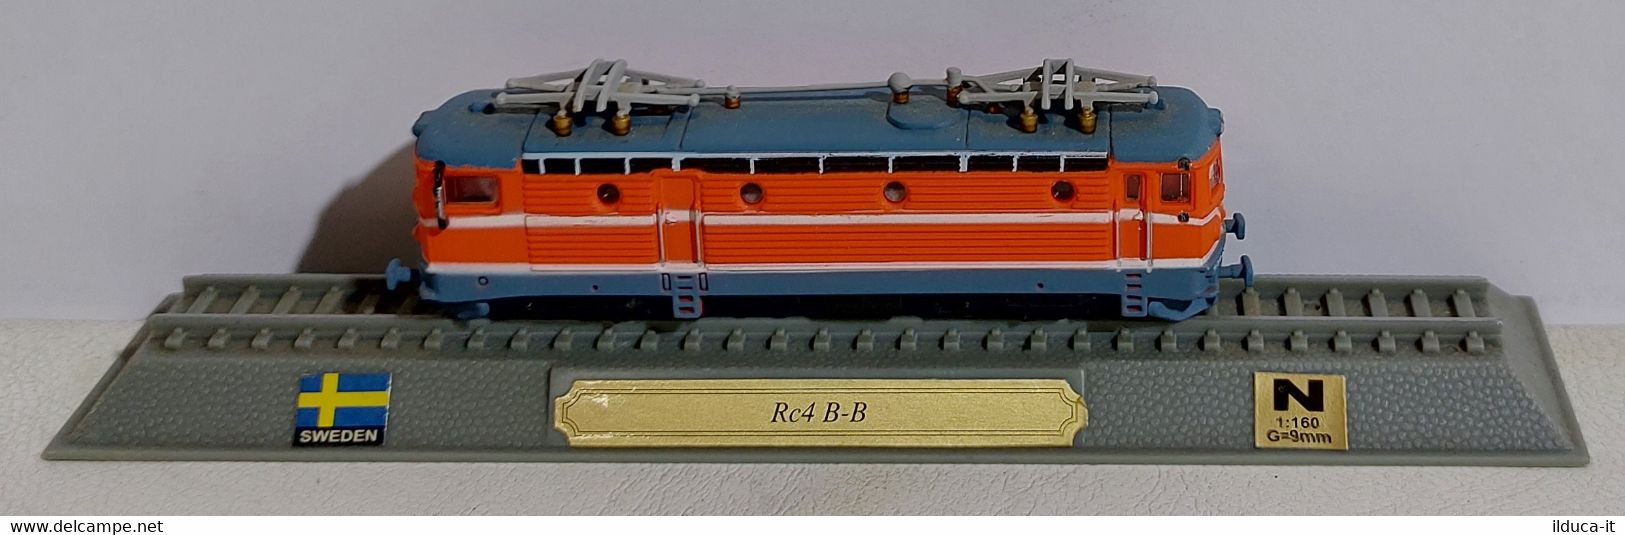 I112566 Del Prado "Locomotive Del Mondo" Sc. N (1:160) - Rc4 B-B - Svezia - Locomotive